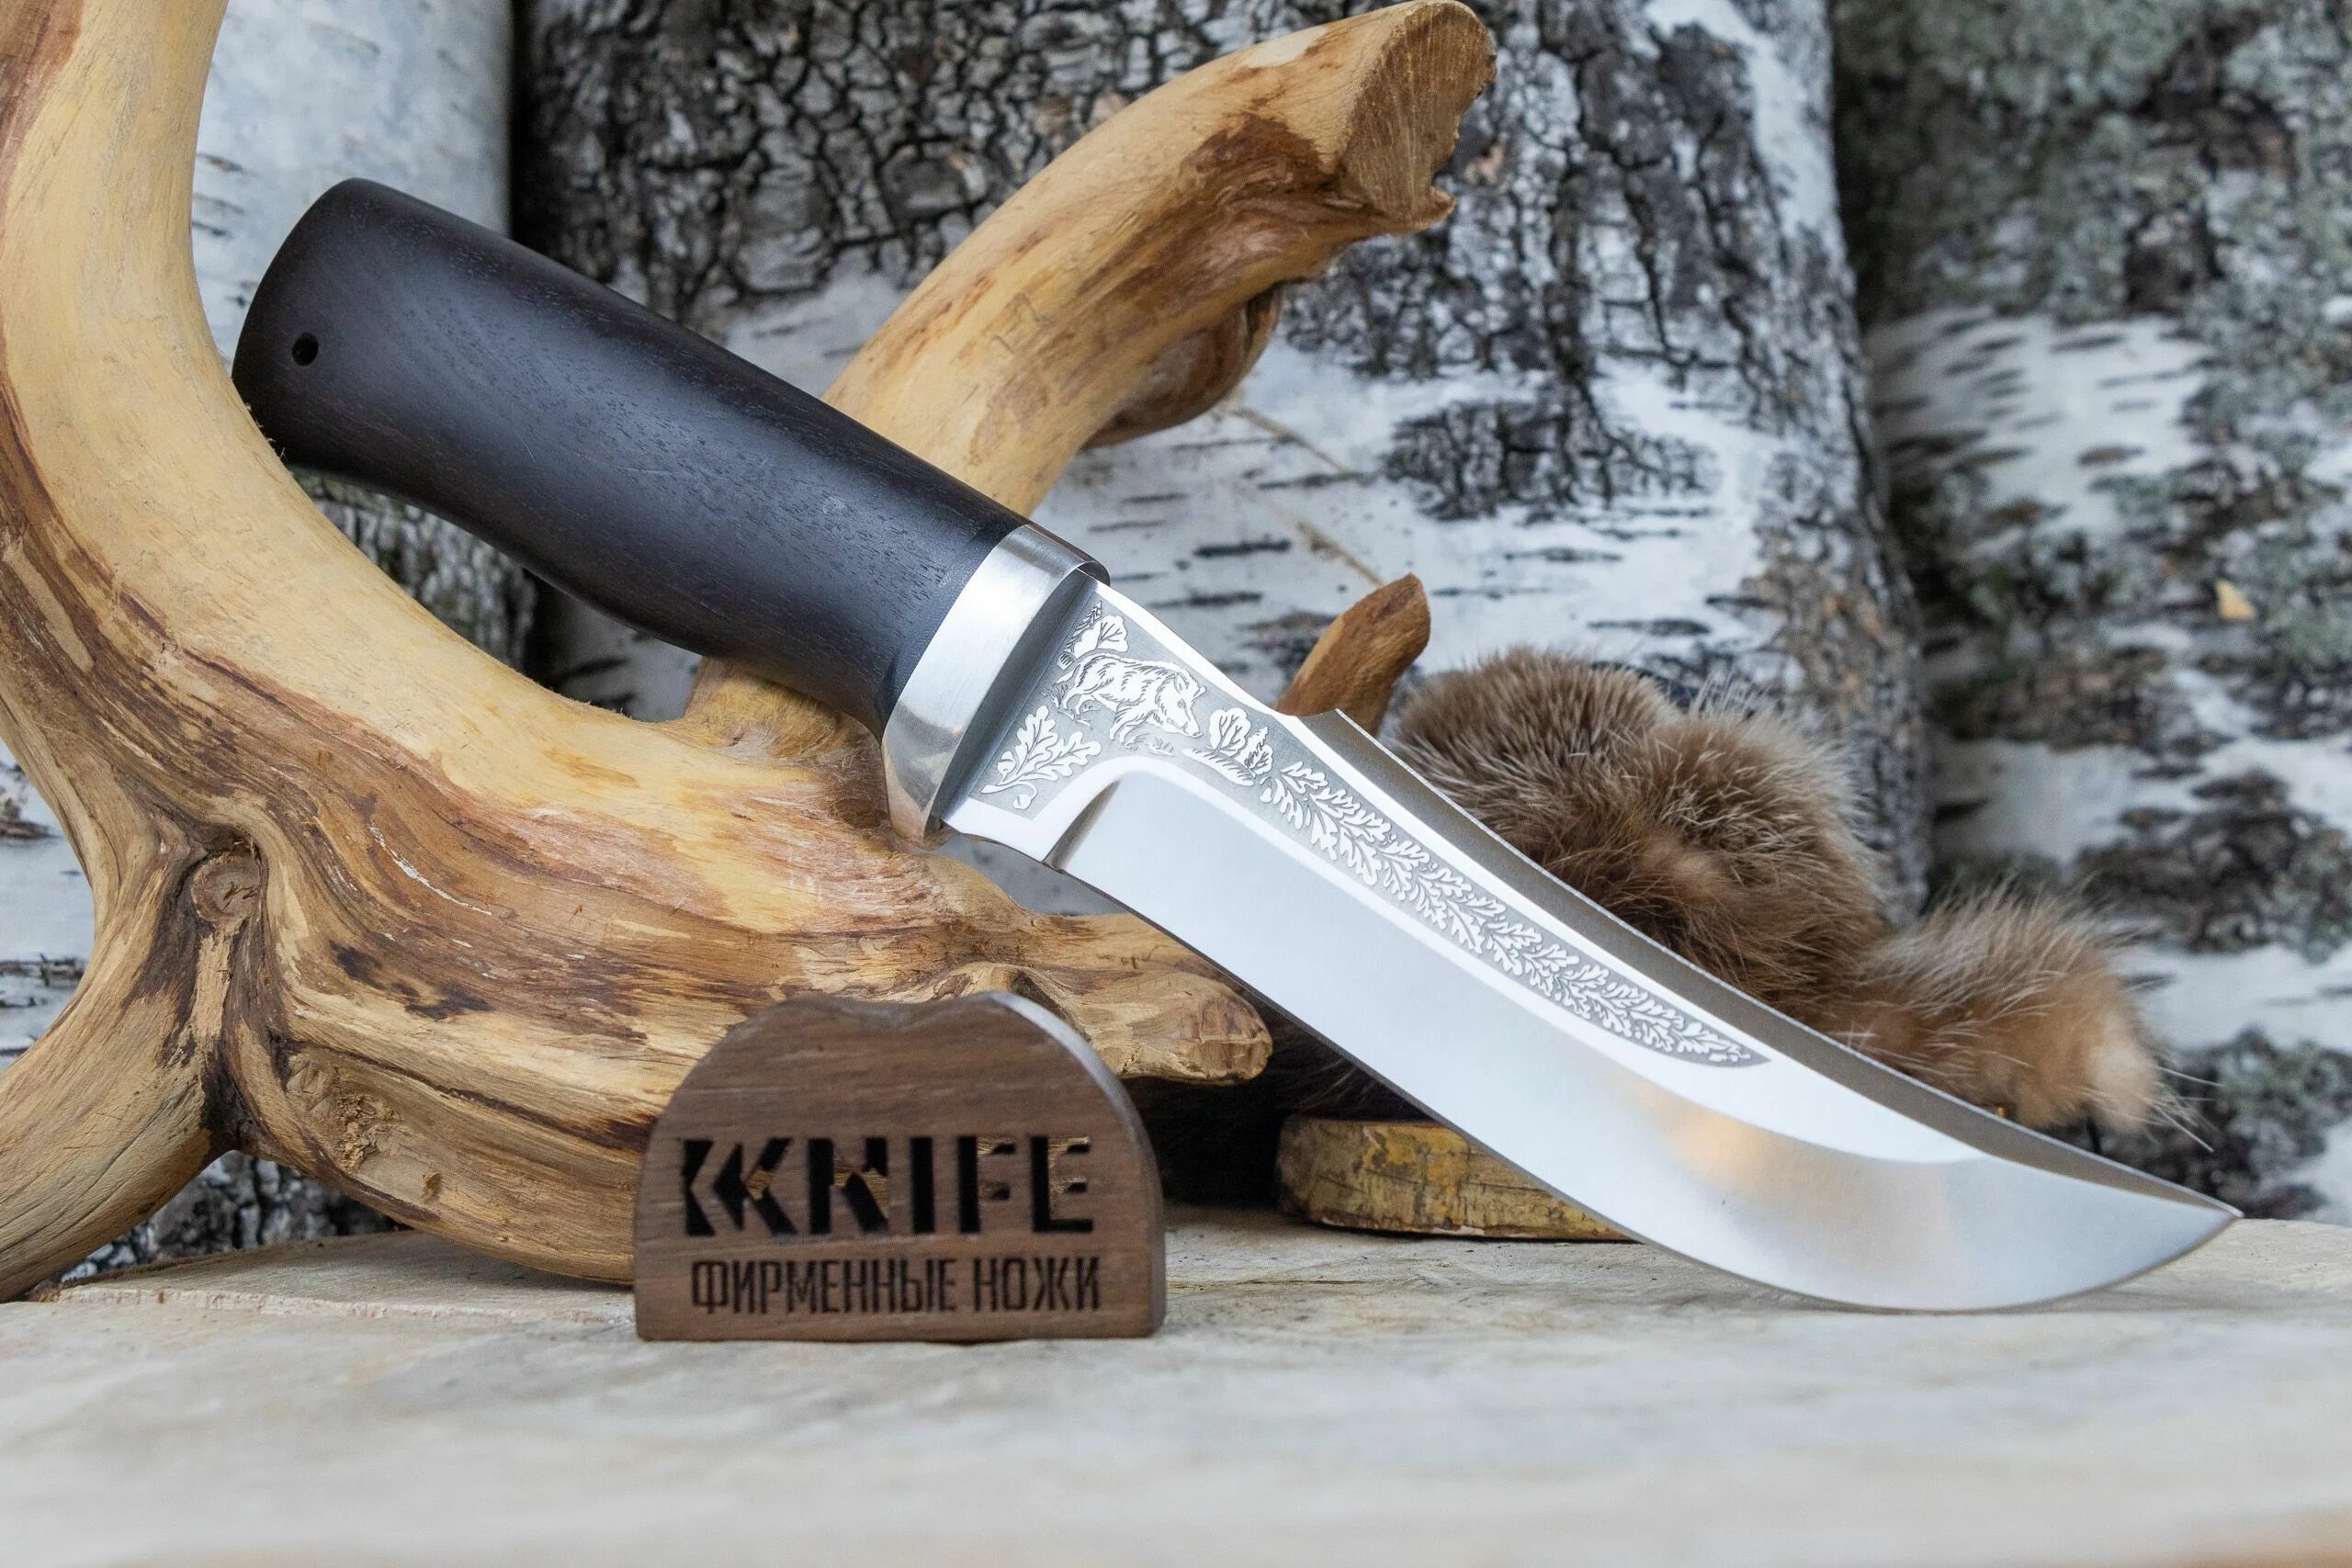 Купить ножи бивни. Нож клык сталь Bohler k110. Нож Uddeholm Elmax Адмирал граб. Нож разделочный клык 65х13. Нож клык Златоуст.